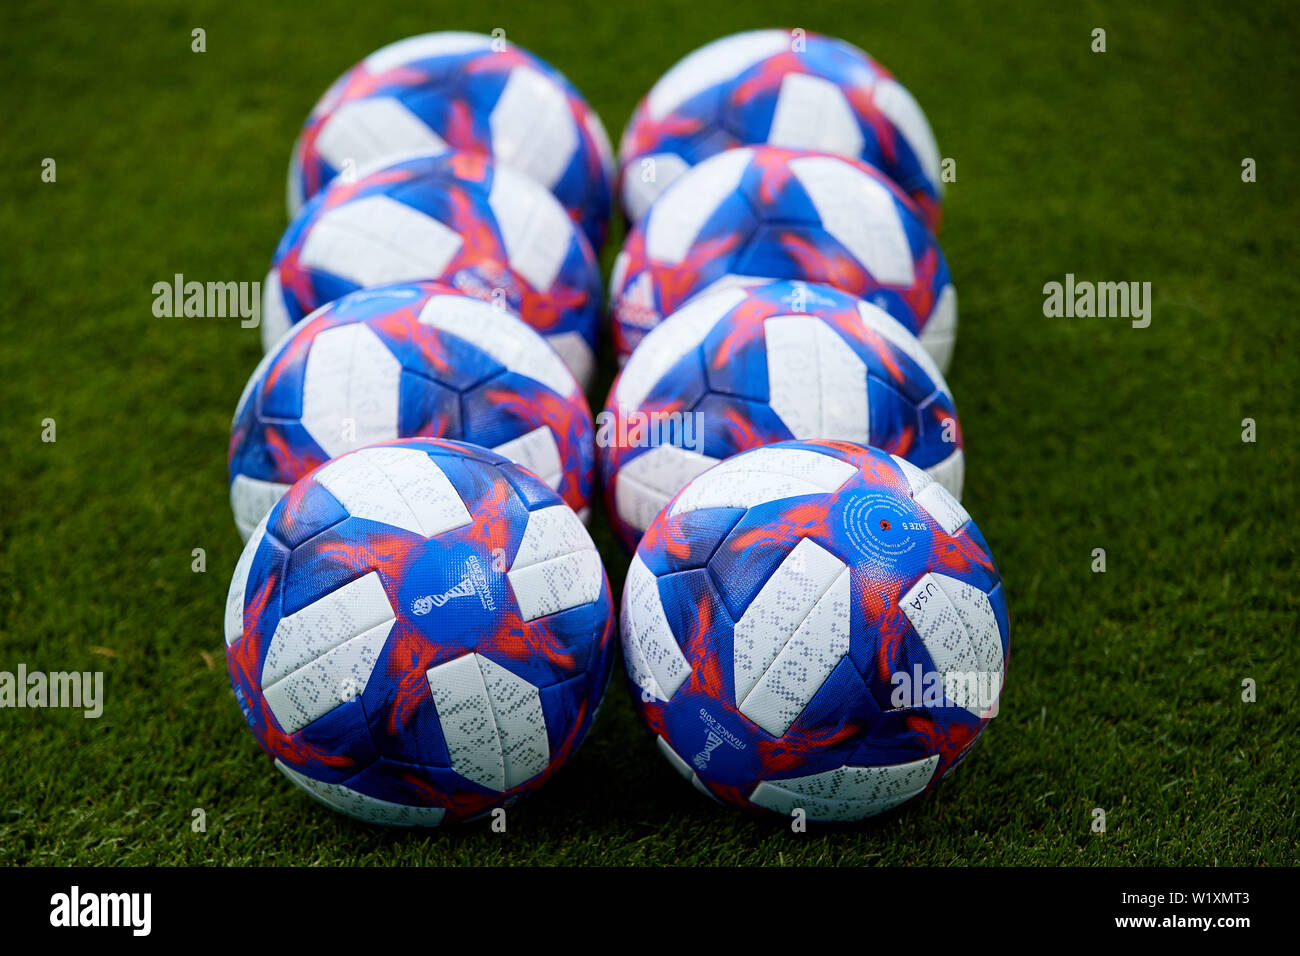 2019 fifa women's world cup official match ball